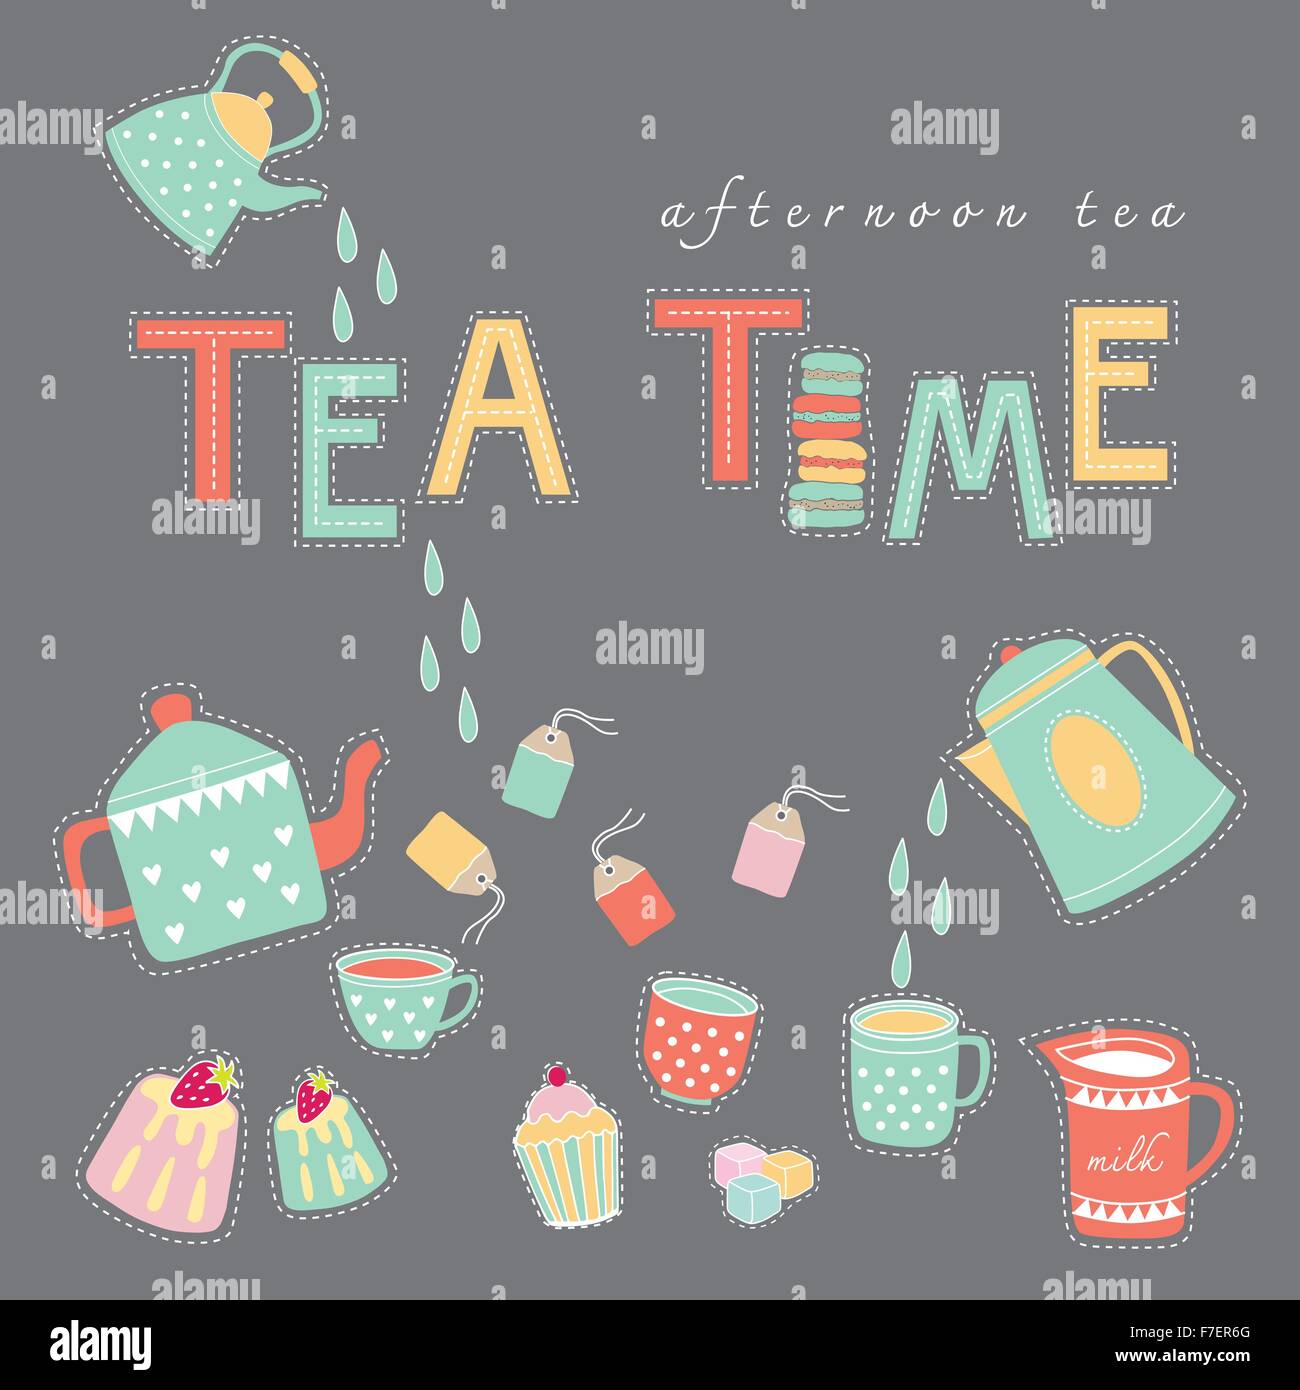 L'heure du thé le thé en après-midi doodle vecteur de couleur pastel illustration sur fond gris foncé théière, tasse de thé, de sachet à thé, gâteau Illustration de Vecteur